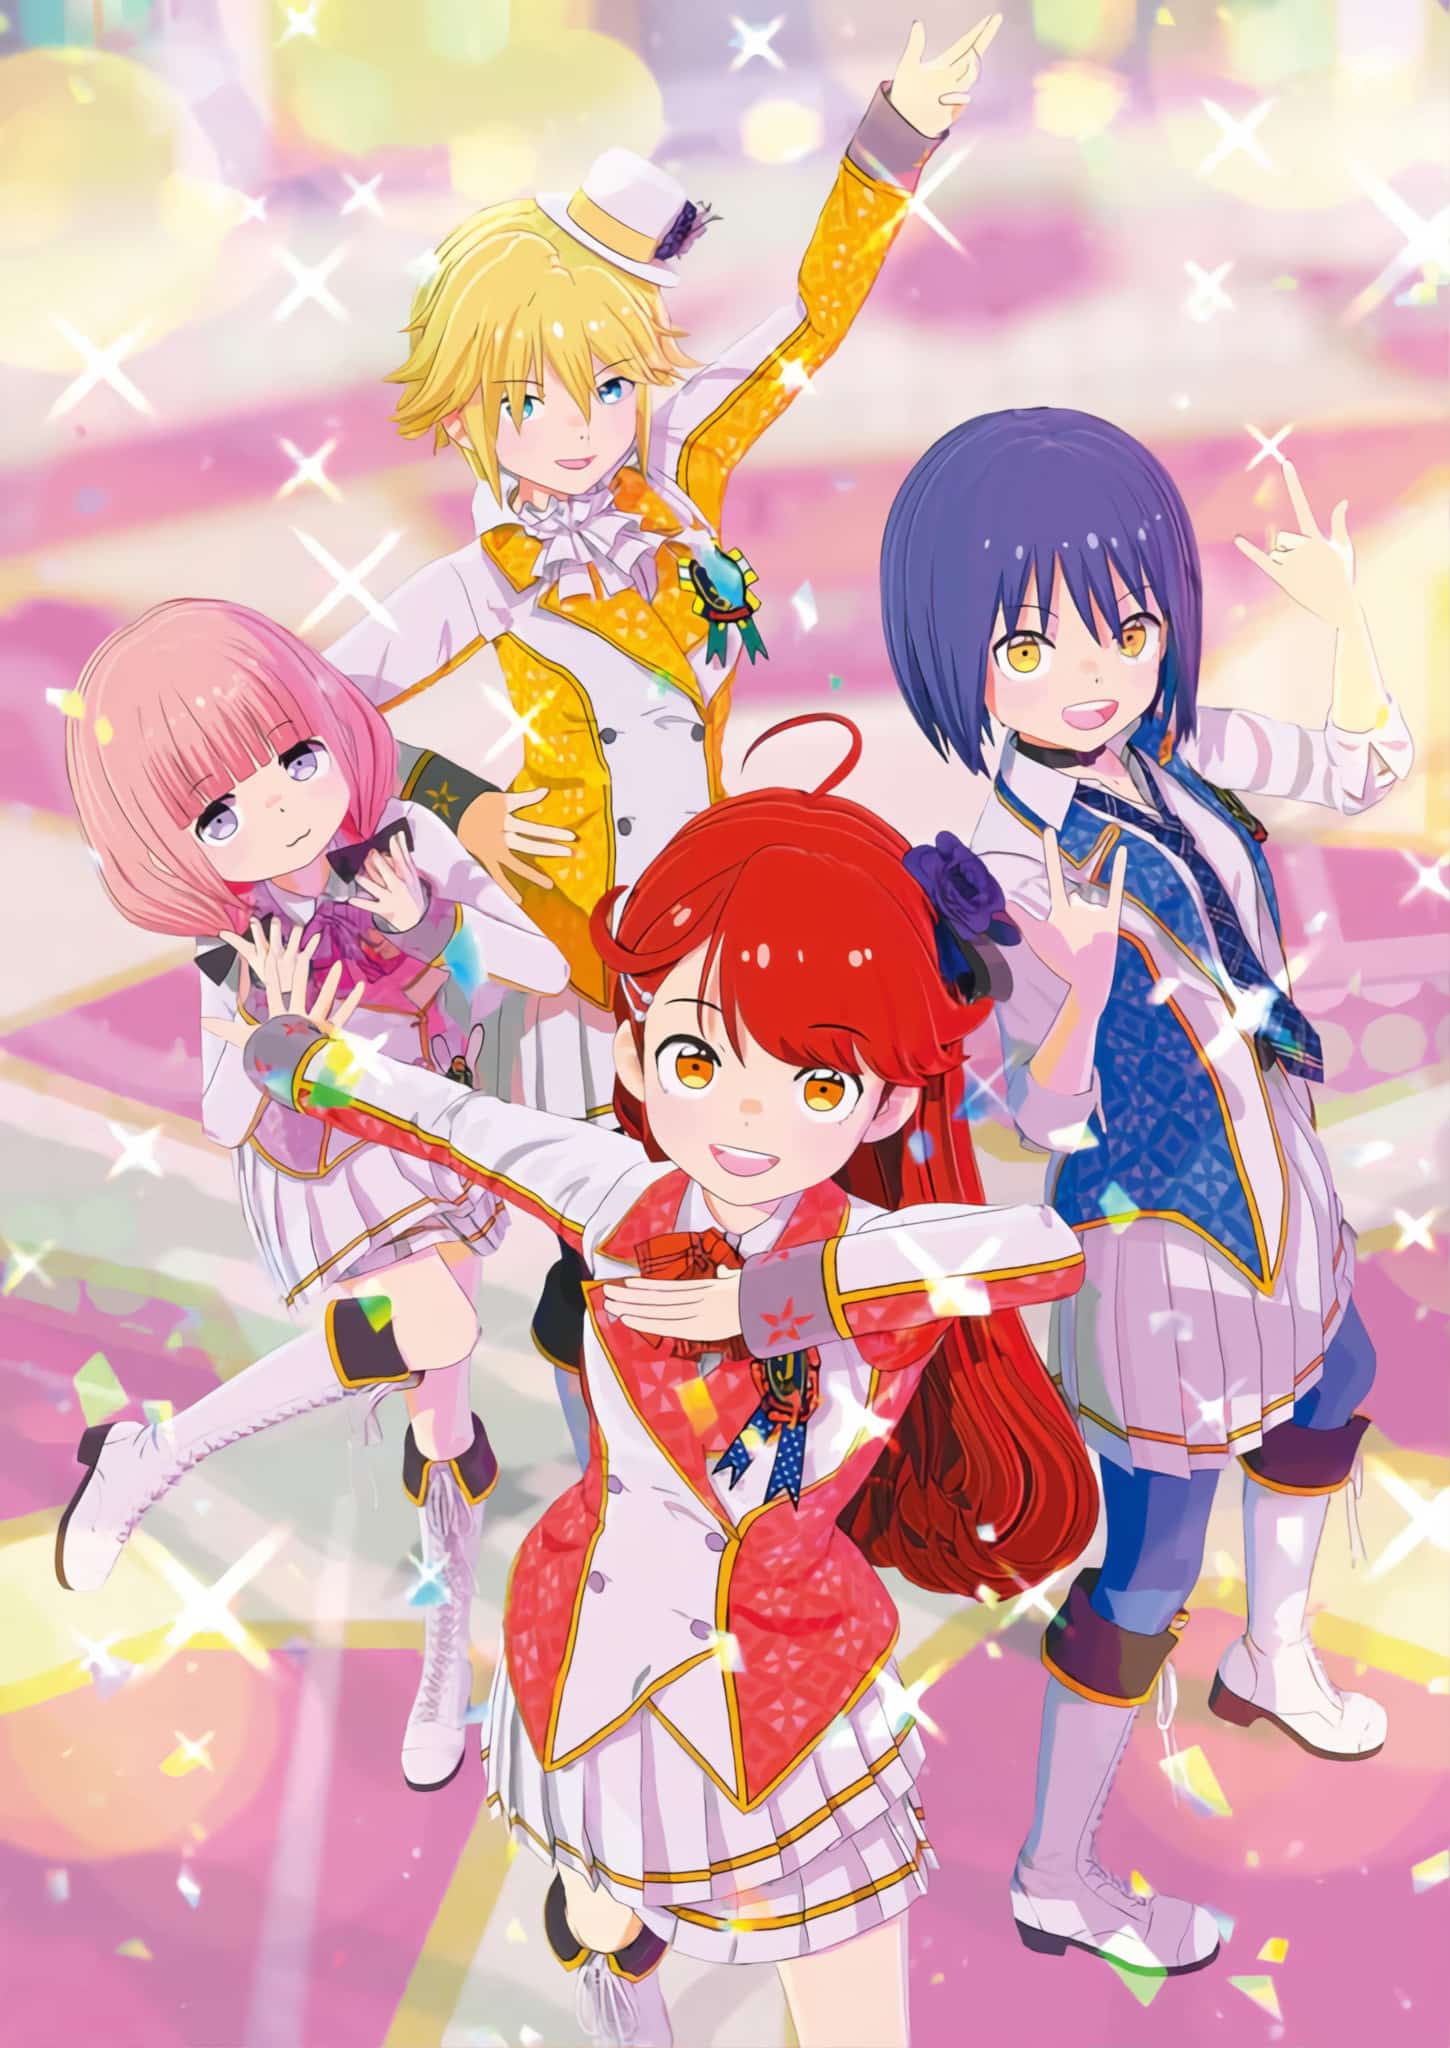 Annonce de anime Idolls en date de sortie